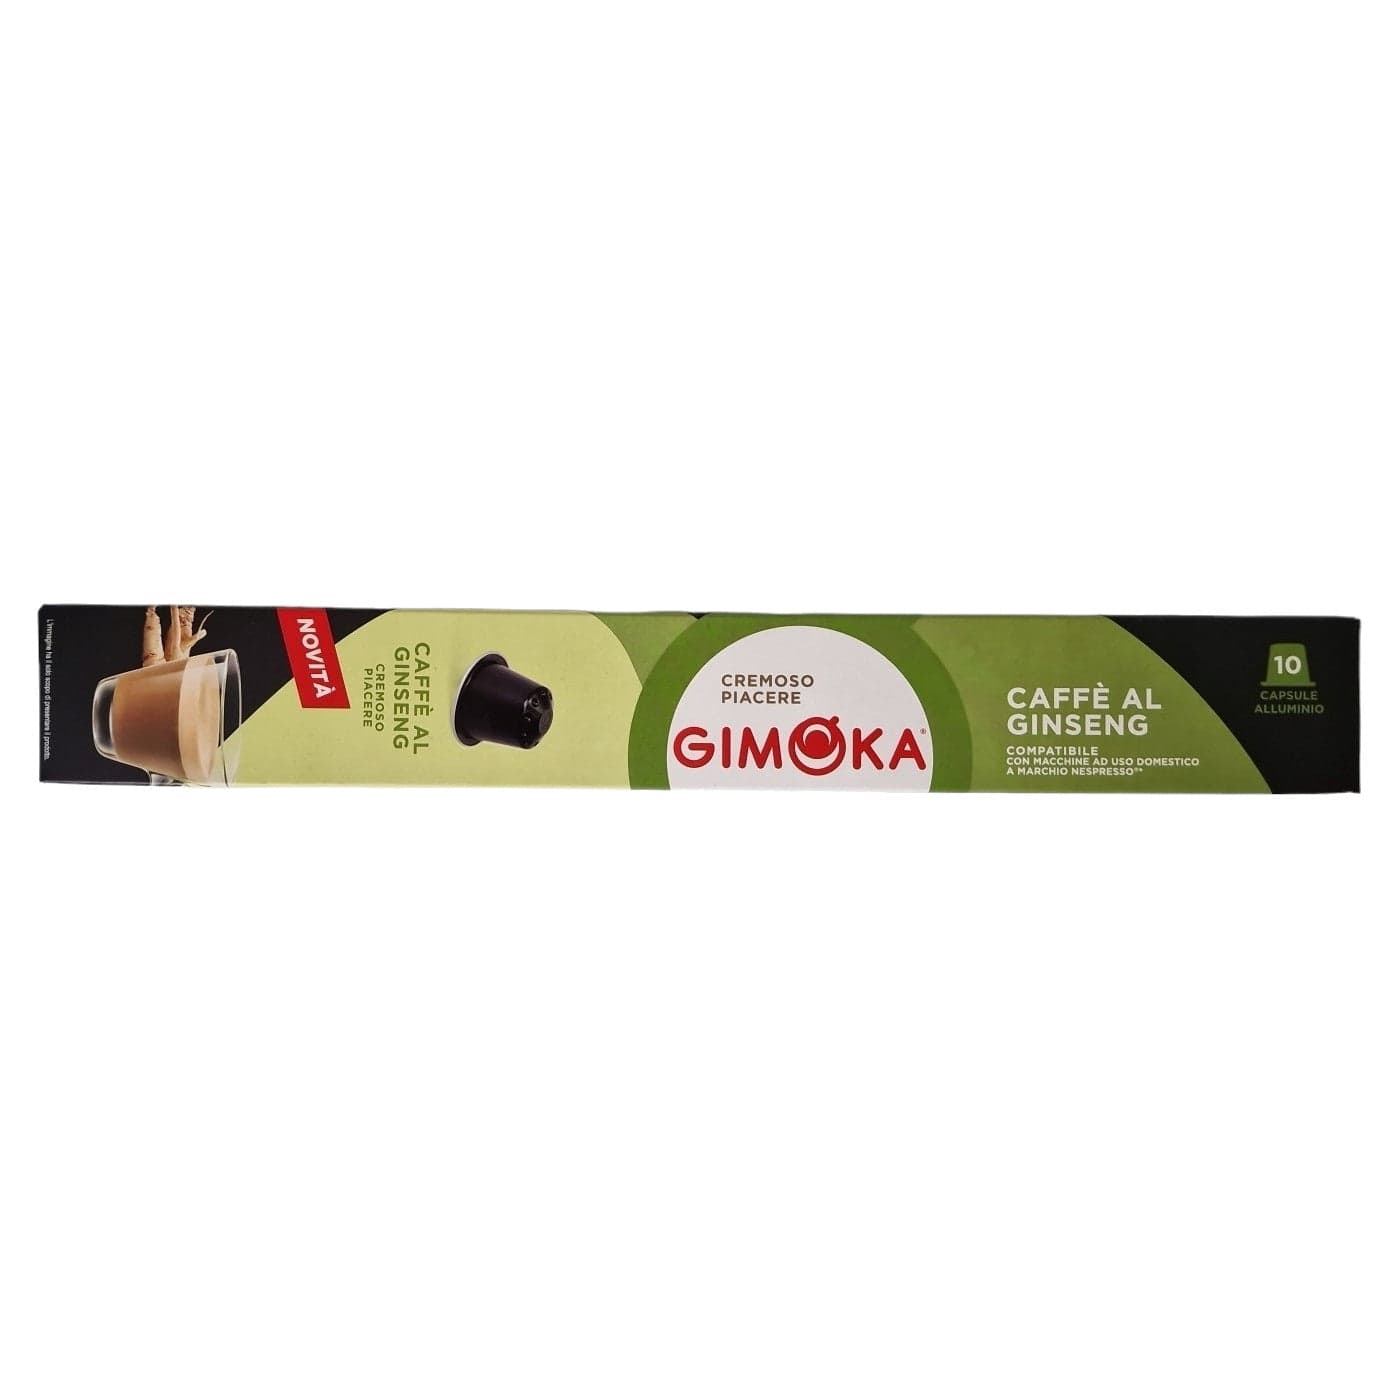 Produkt GIMOKA Kapsułki do ekspresu Kapsułki do ekspresu GIMOKA Nespresso Gimoka Ginseng 10 szt. S01125